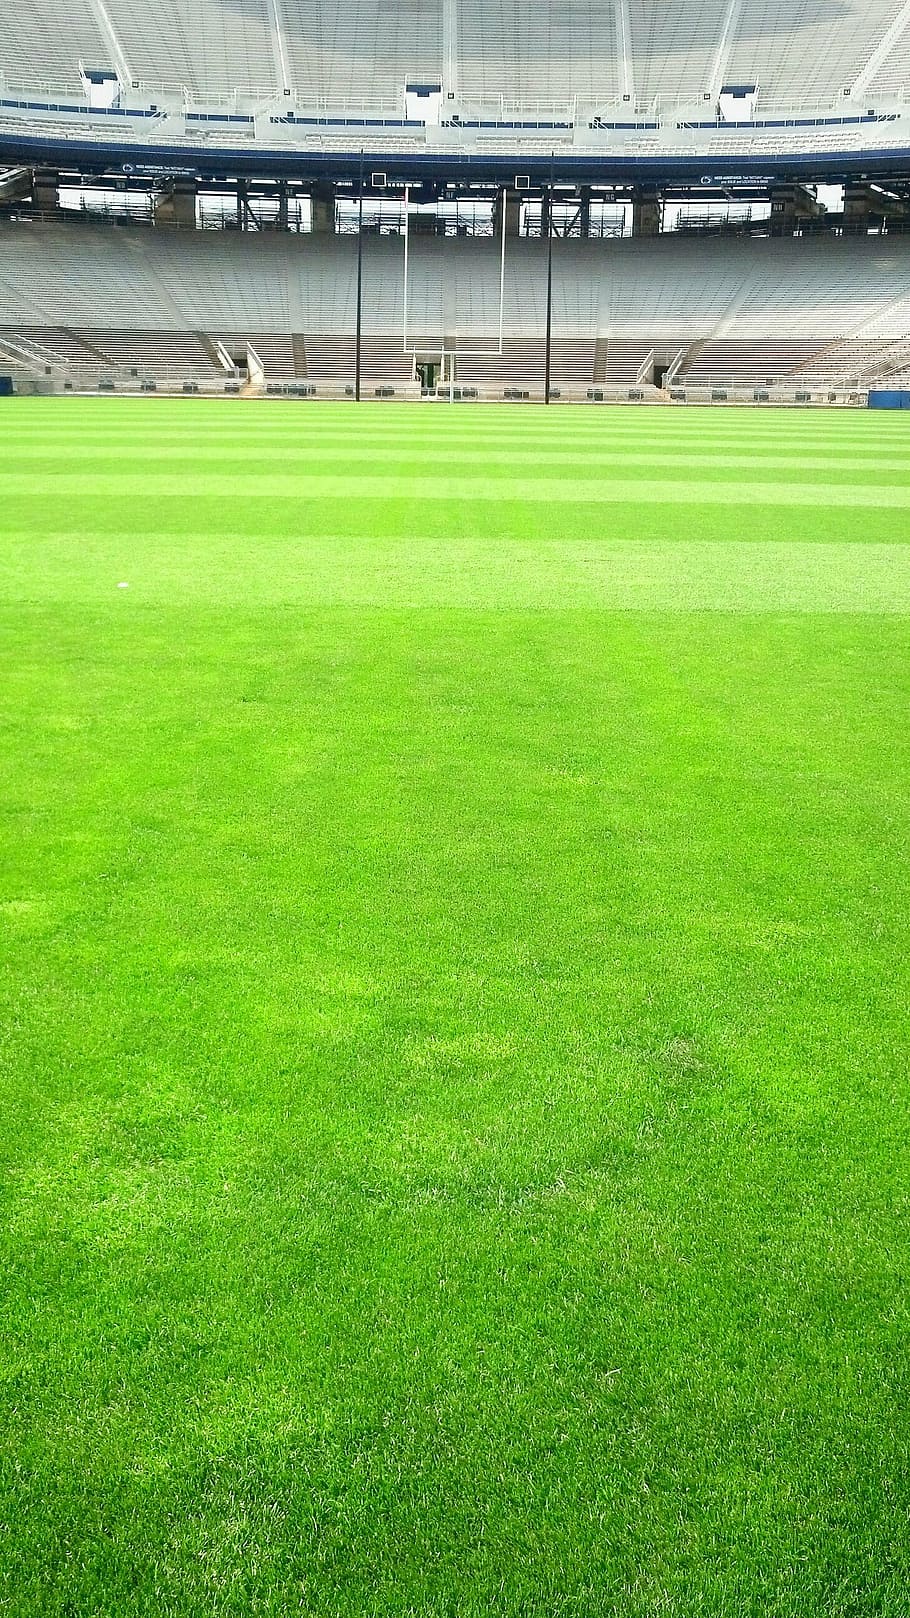 hijau, rumput nfl, diajukan, stadion berang-berang, stadion, lapangan, rumput, sepak bola, olahraga, warna hijau